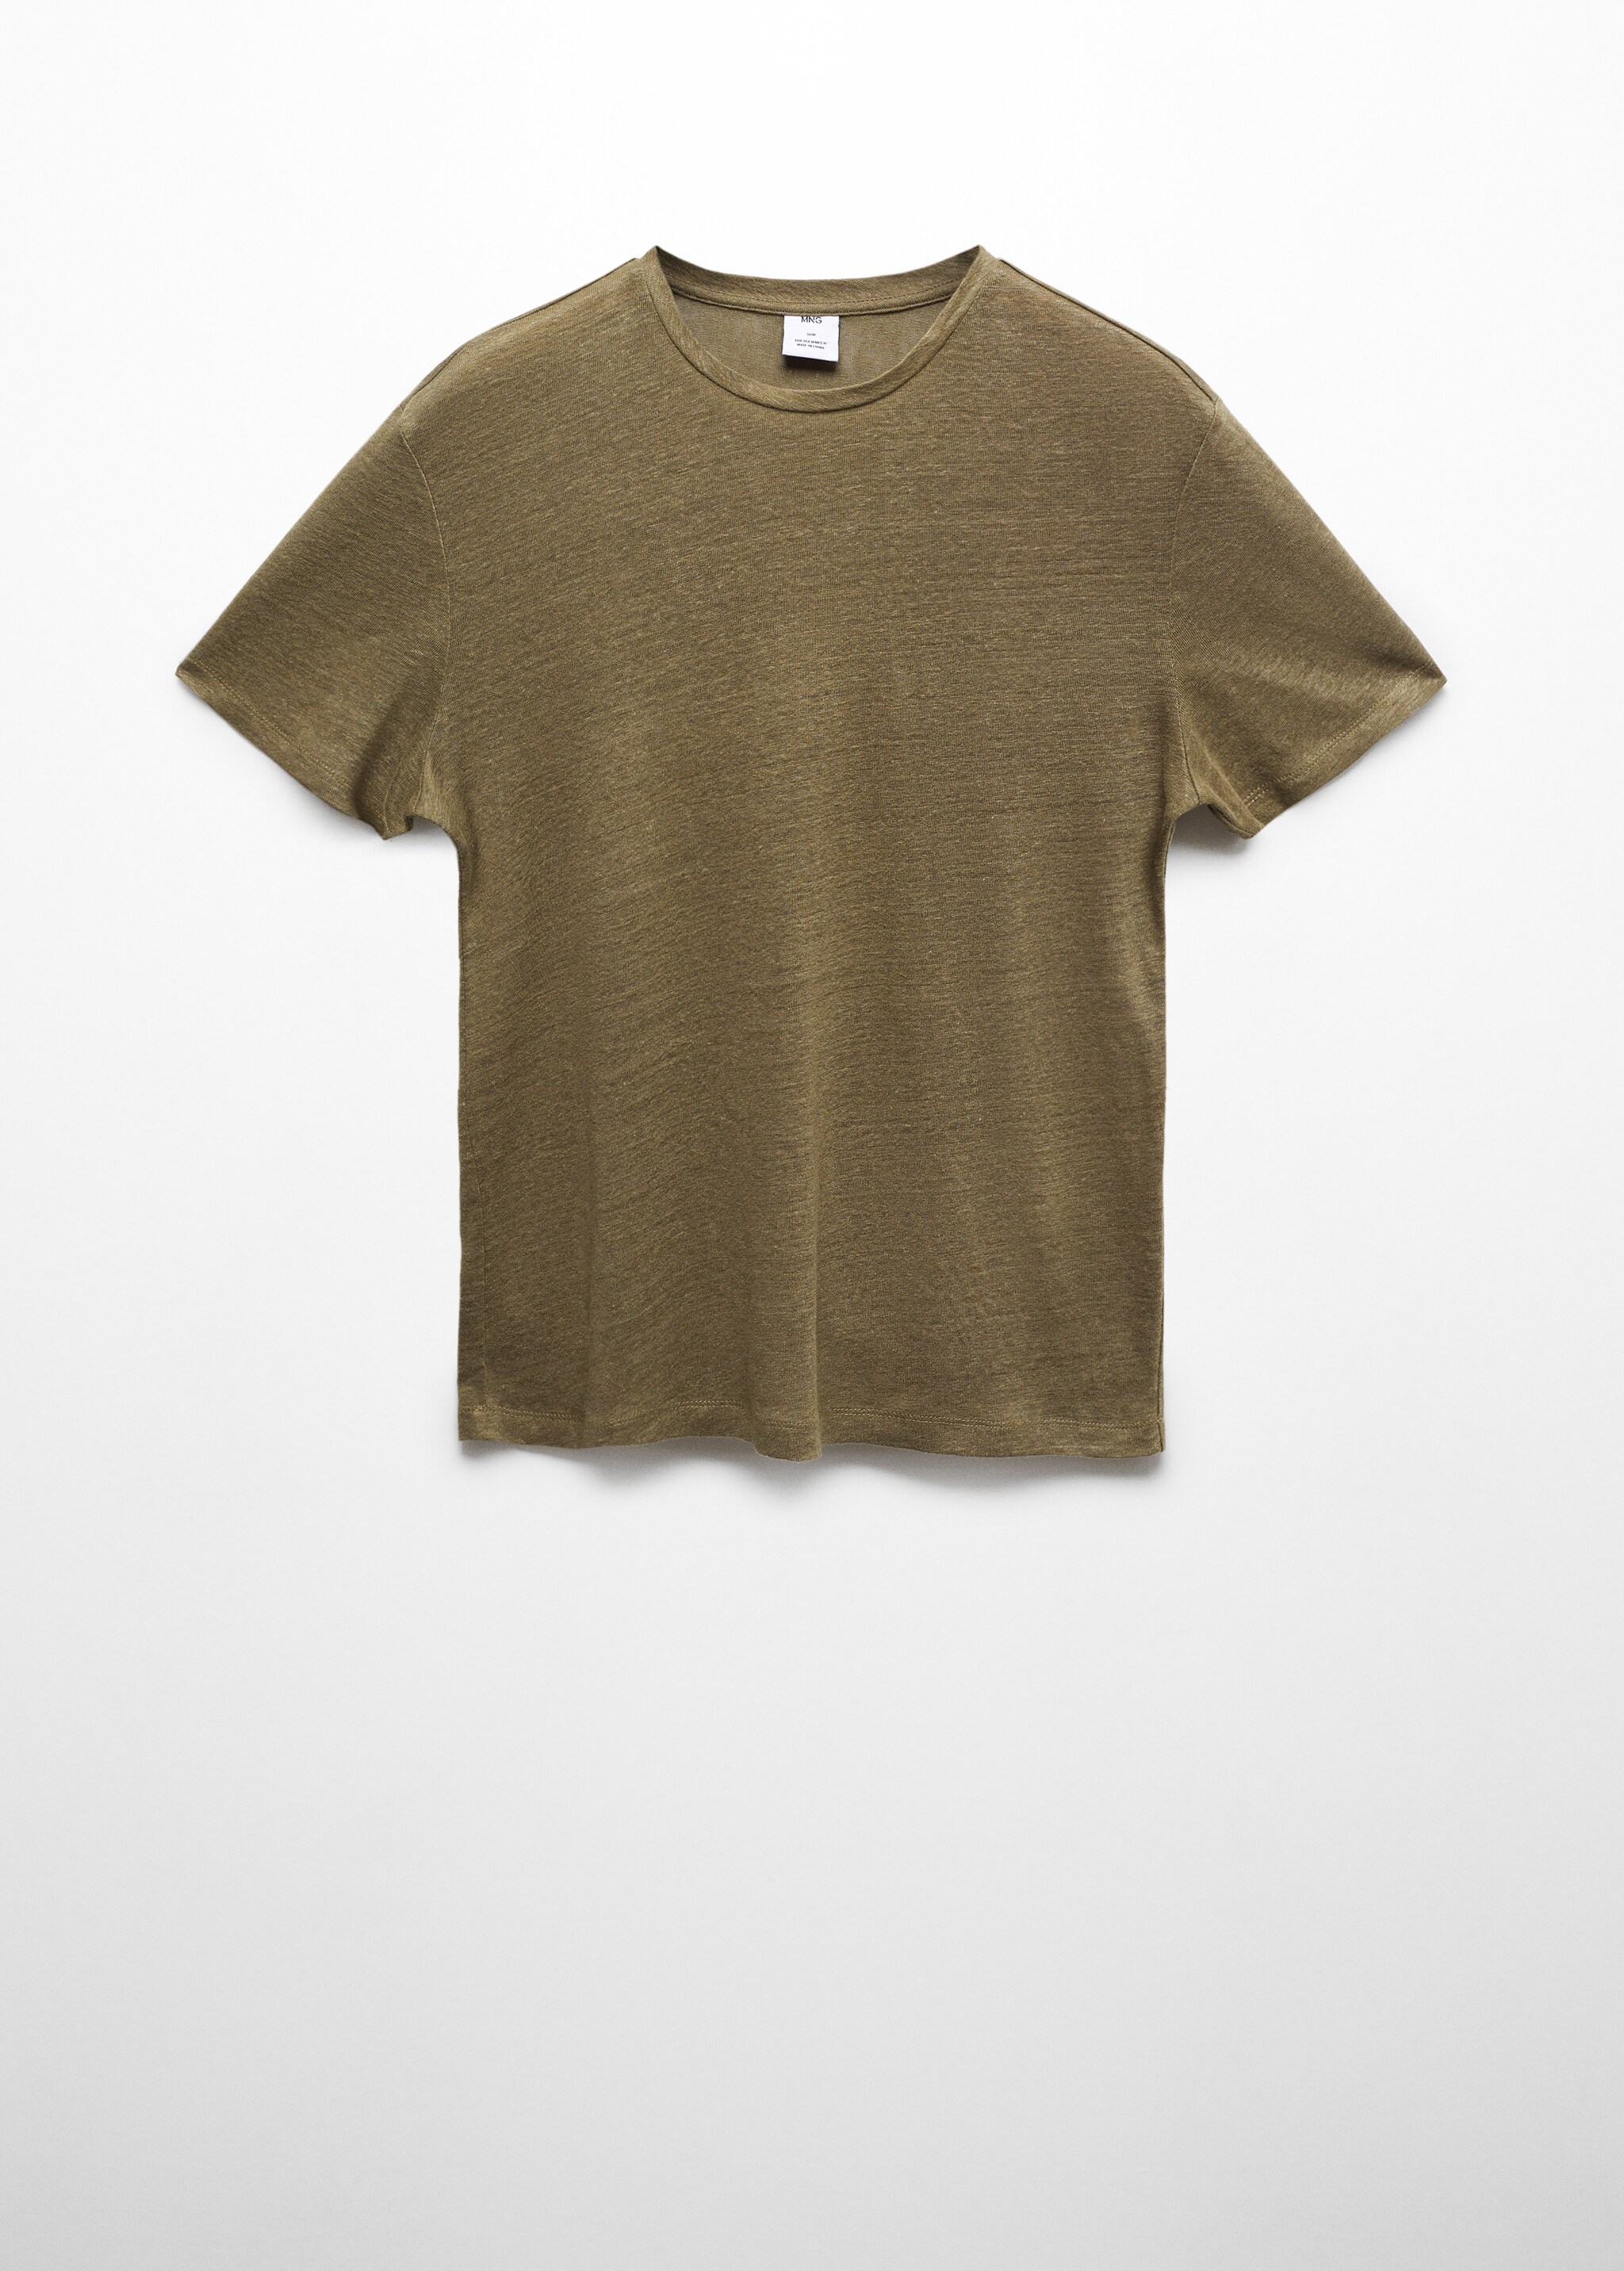 Camiseta slim fit 100% lino - Artículo sin modelo